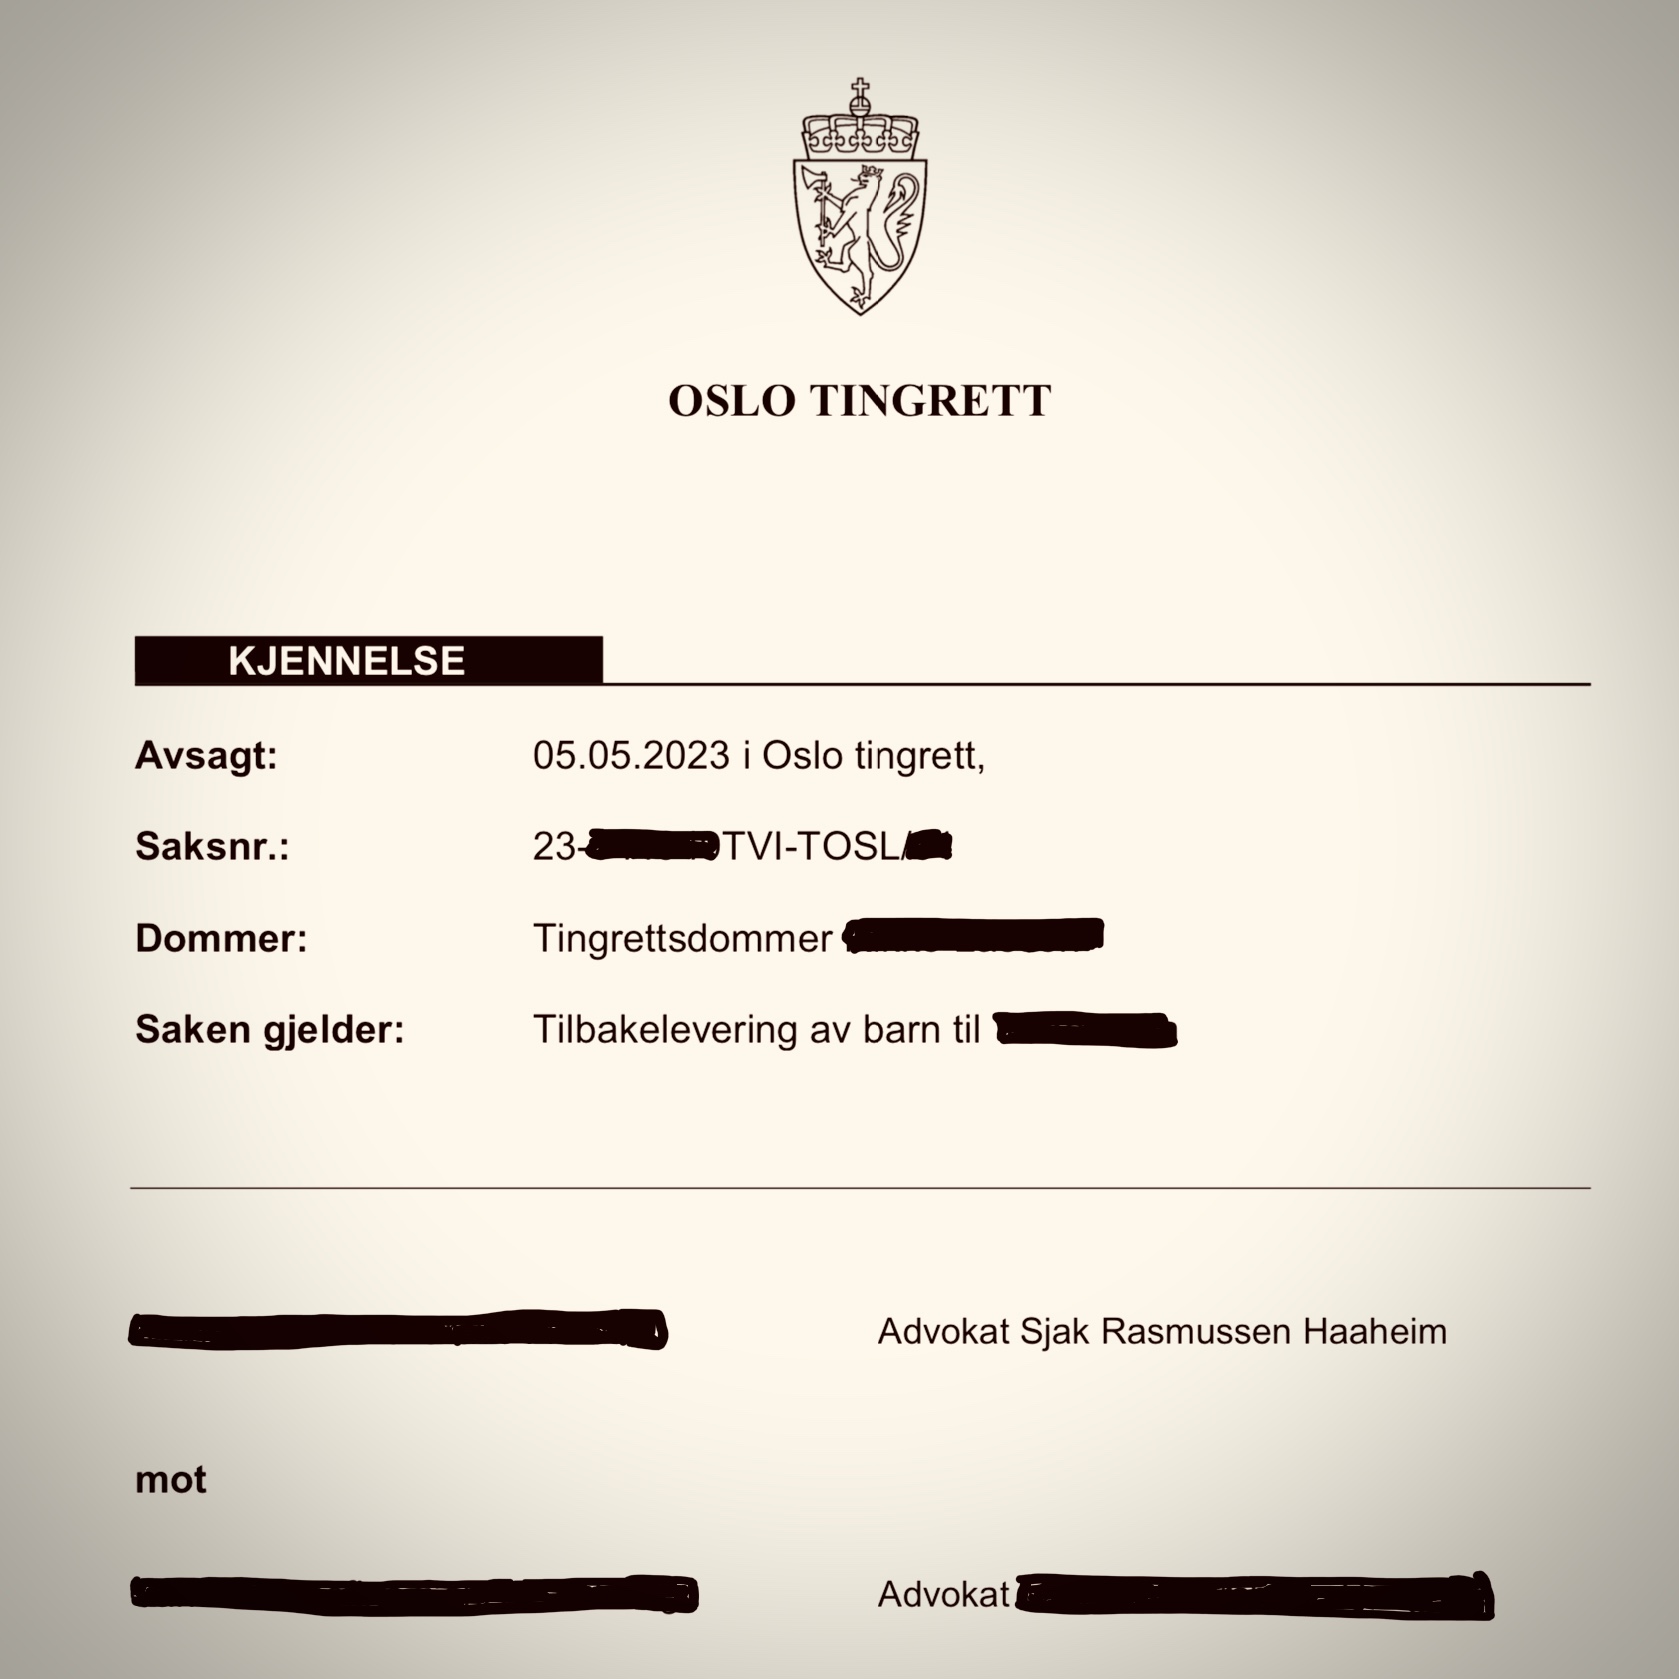 Bilde av rettsbok fra Oslo tingrett